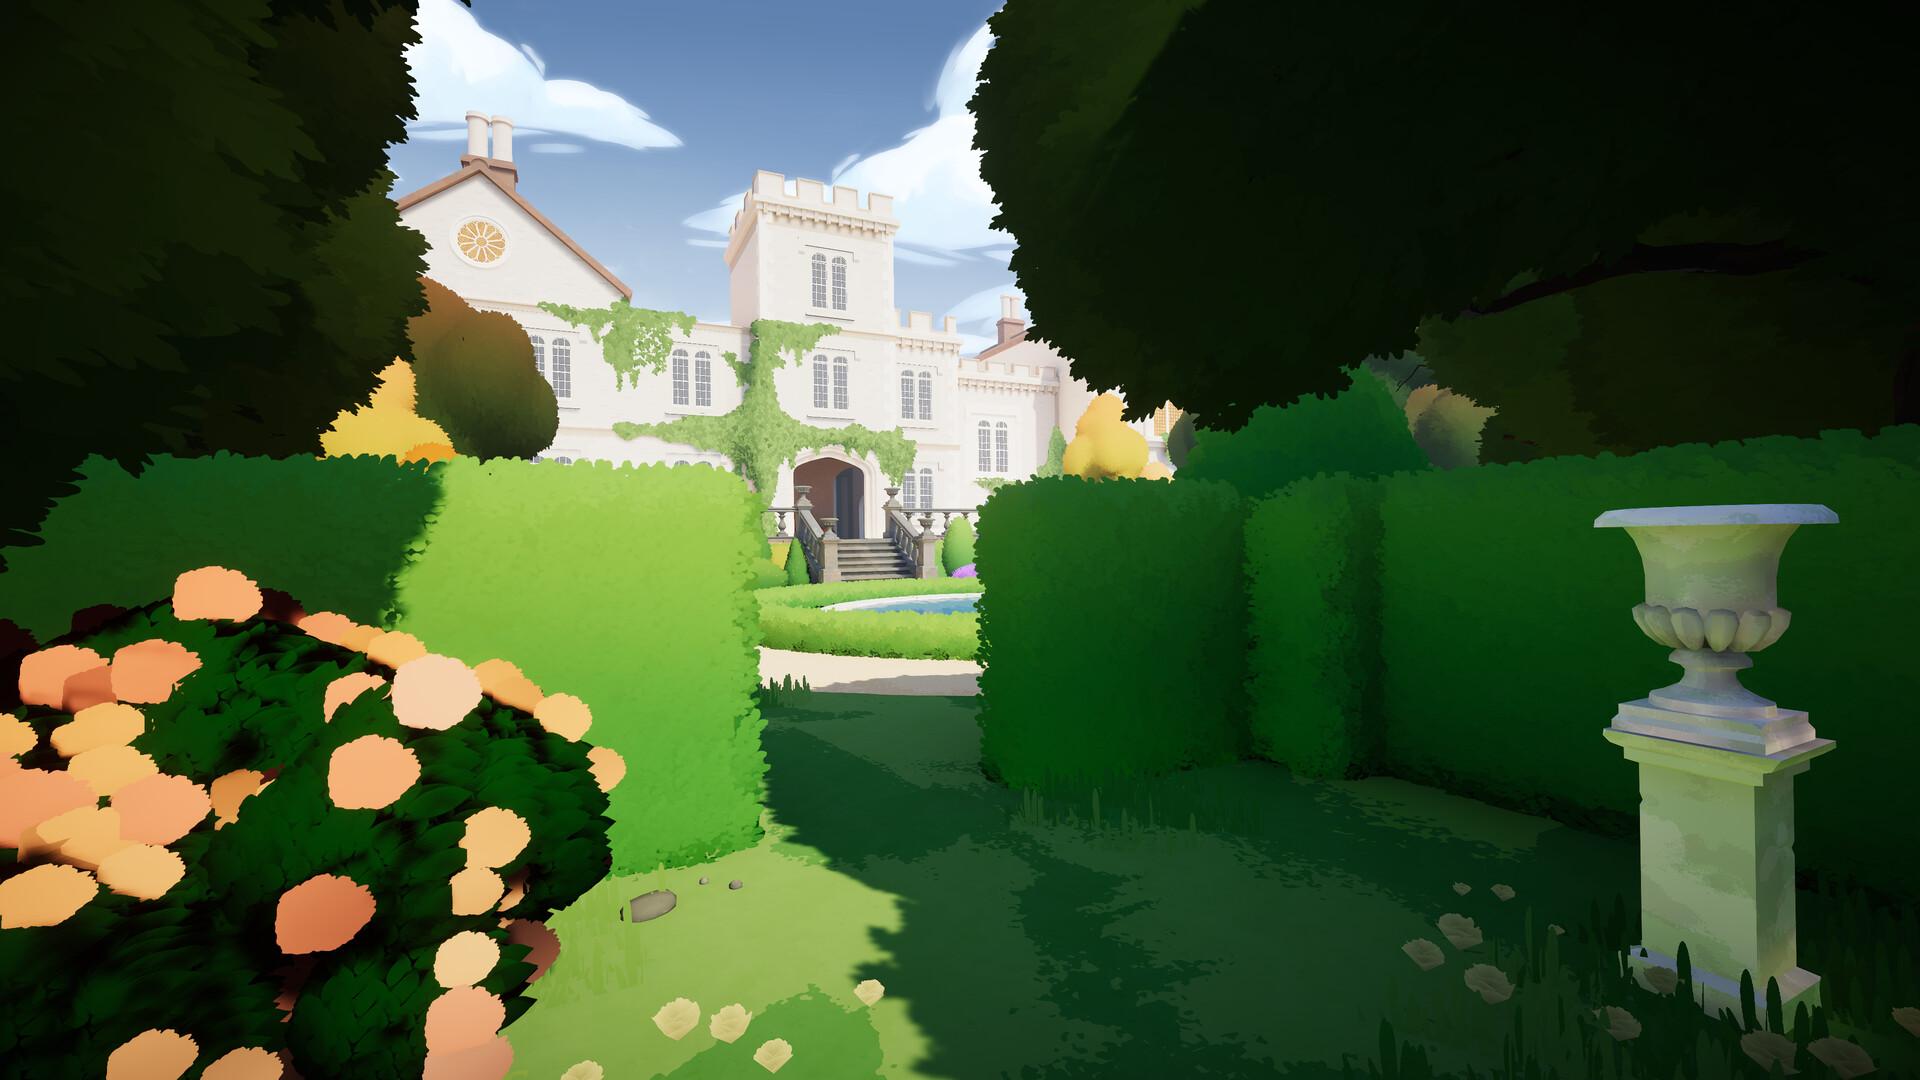 沉浸式模拟教育游戏《植物学庄园》 现已经在新品节推出试玩Demo